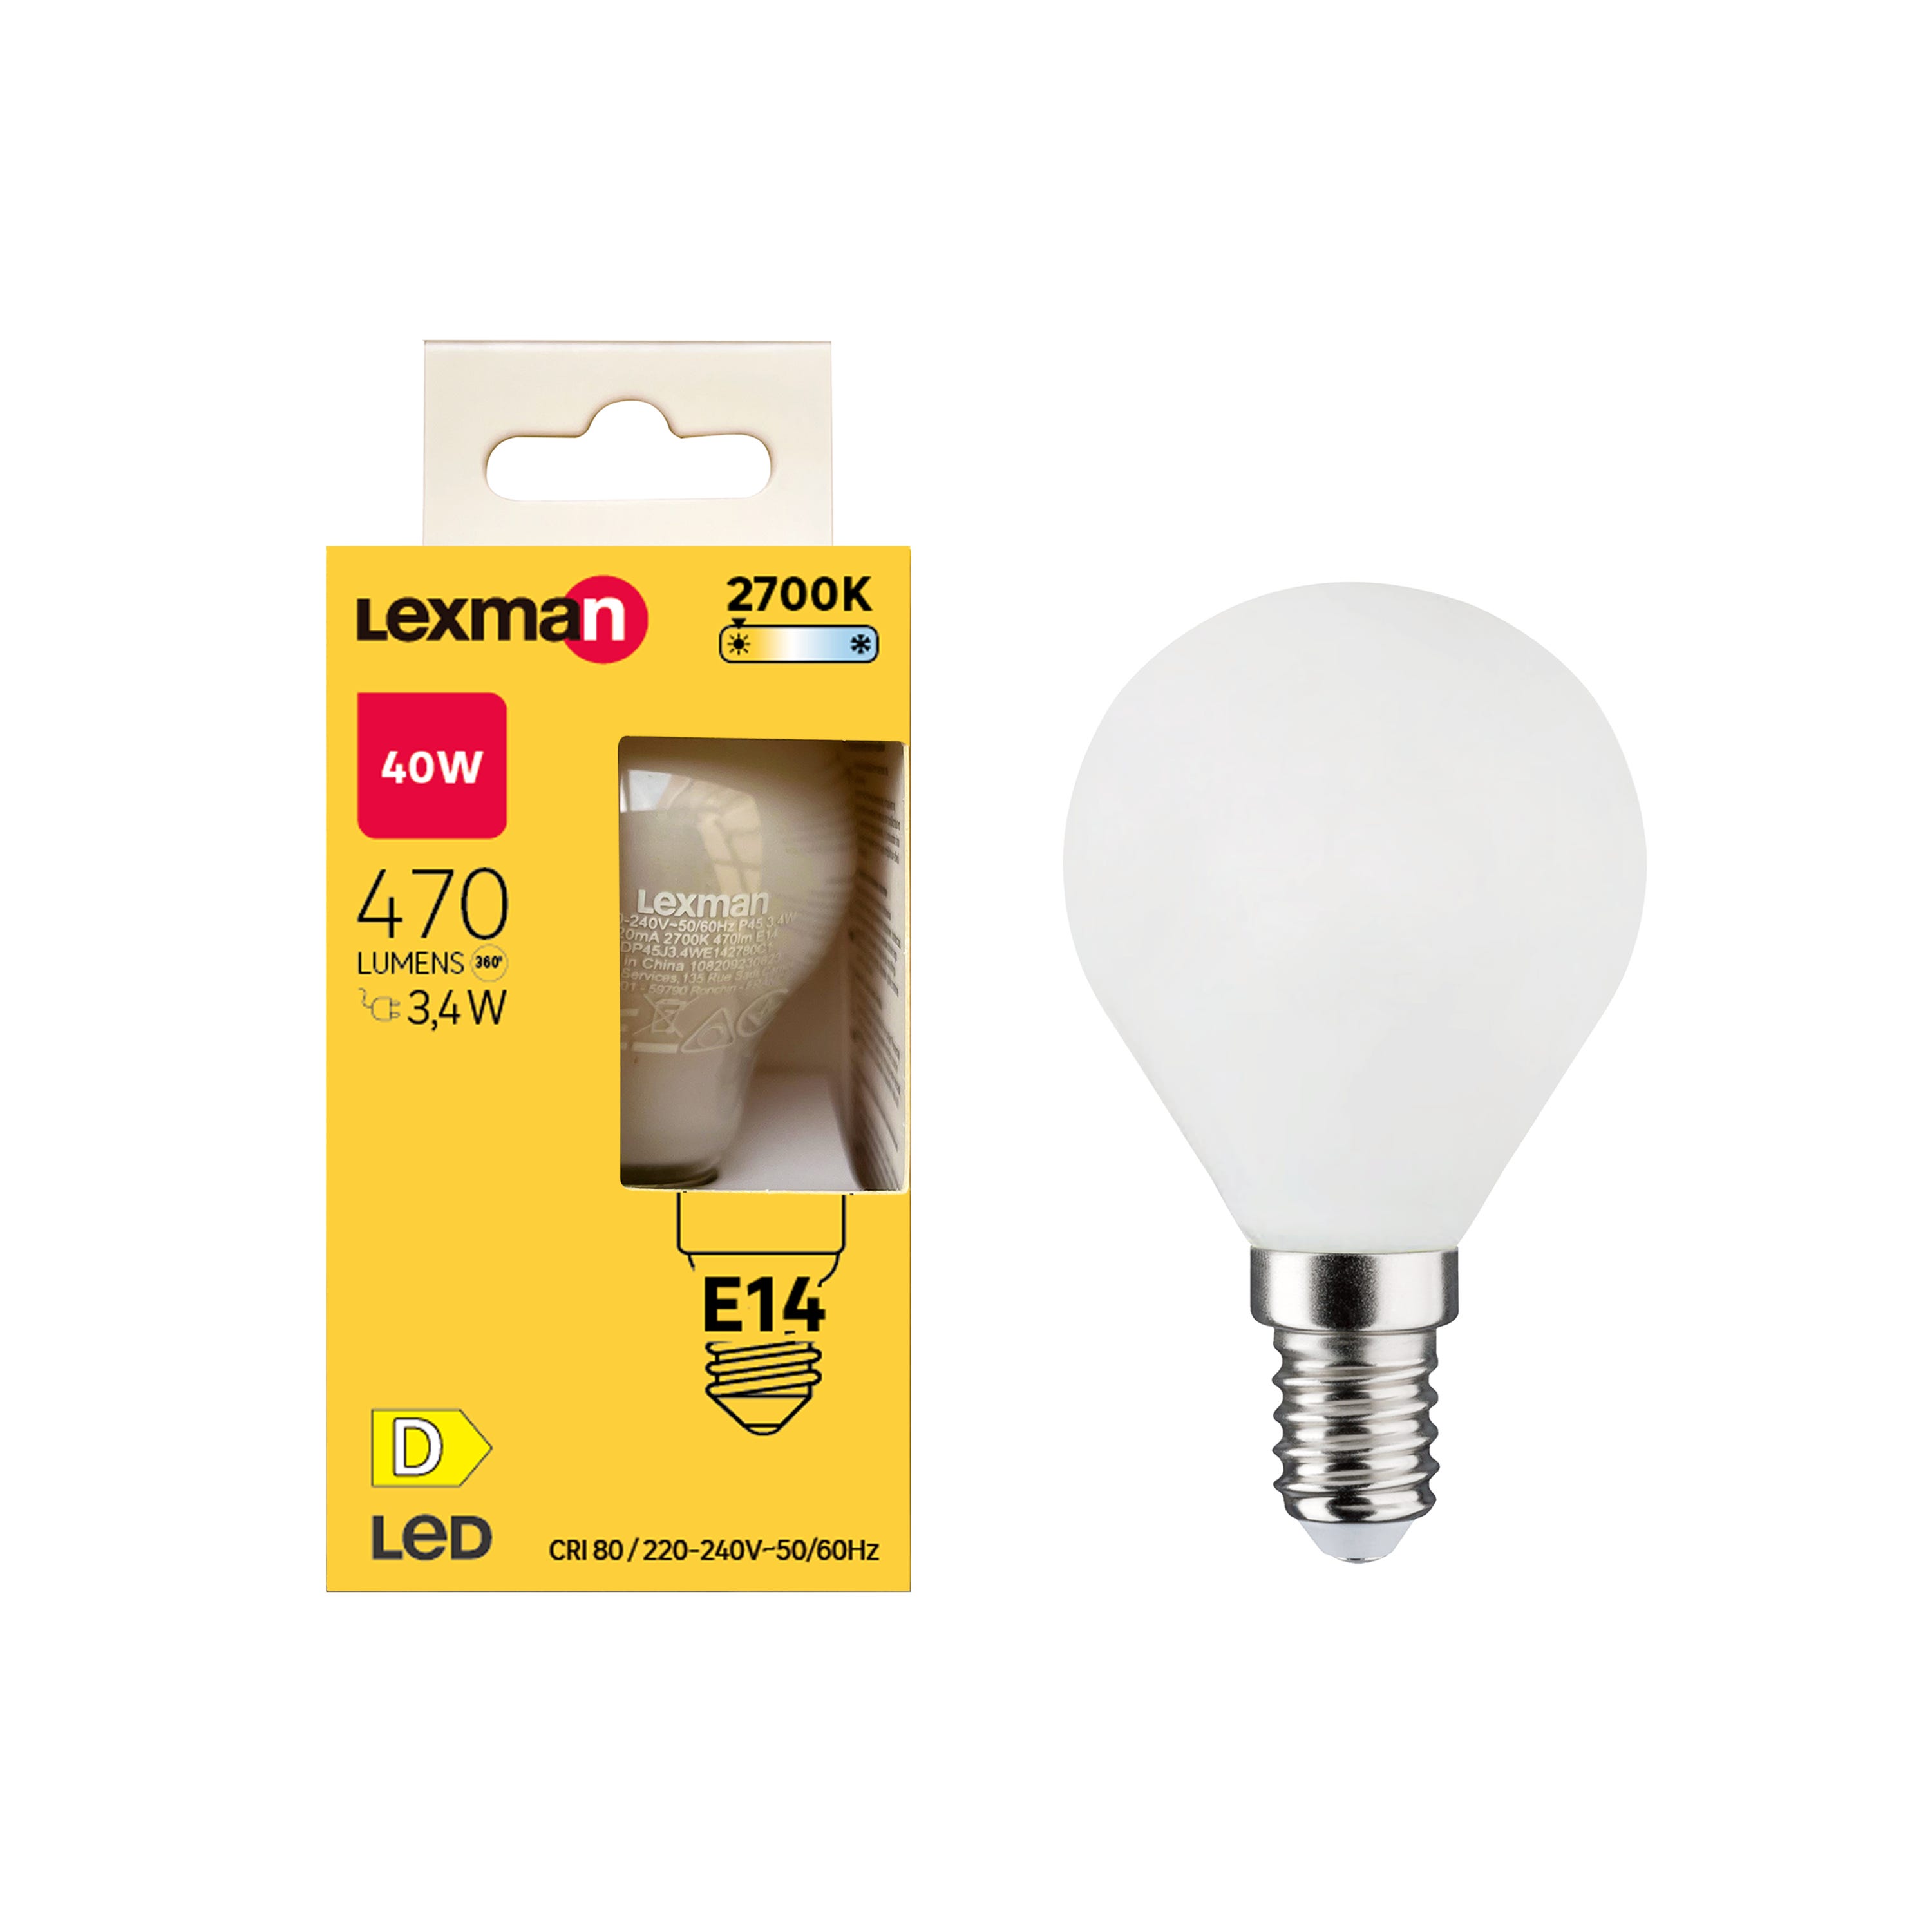 LnD I Réflecteur led E14 470lm, 40W (Eq. Inc.), blanc chaud